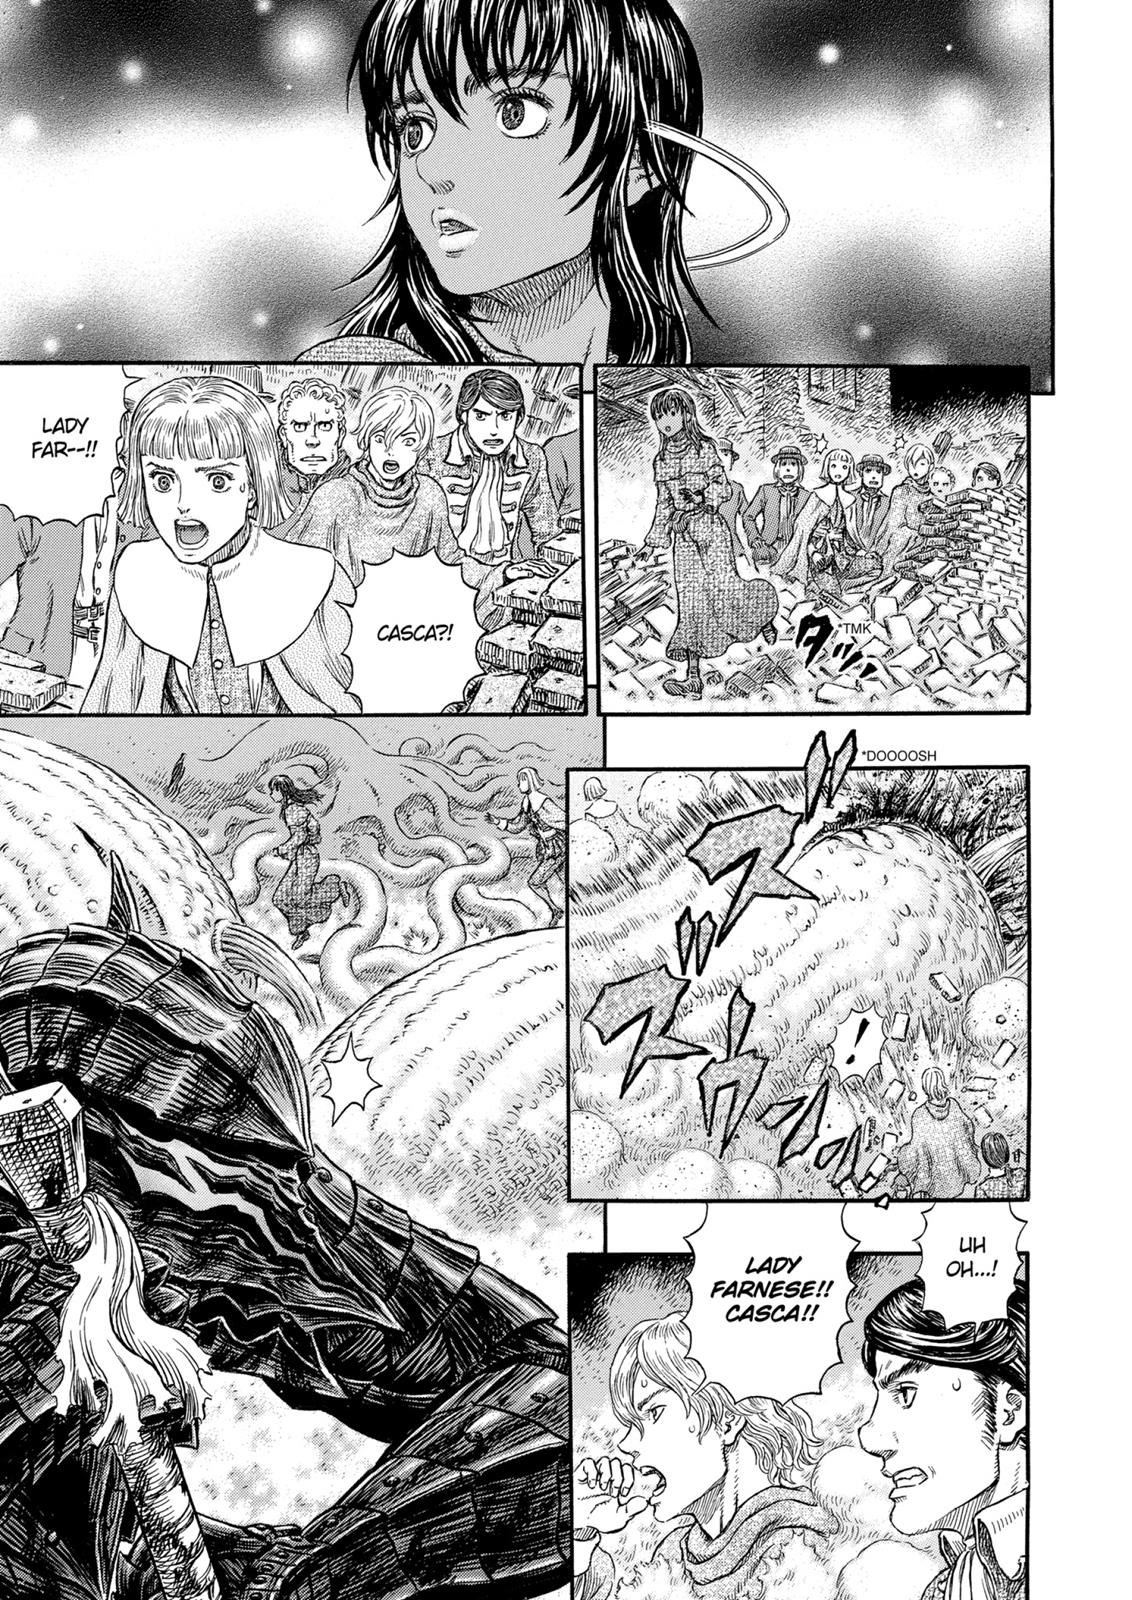 Berserk Manga Chapter 316 image 25